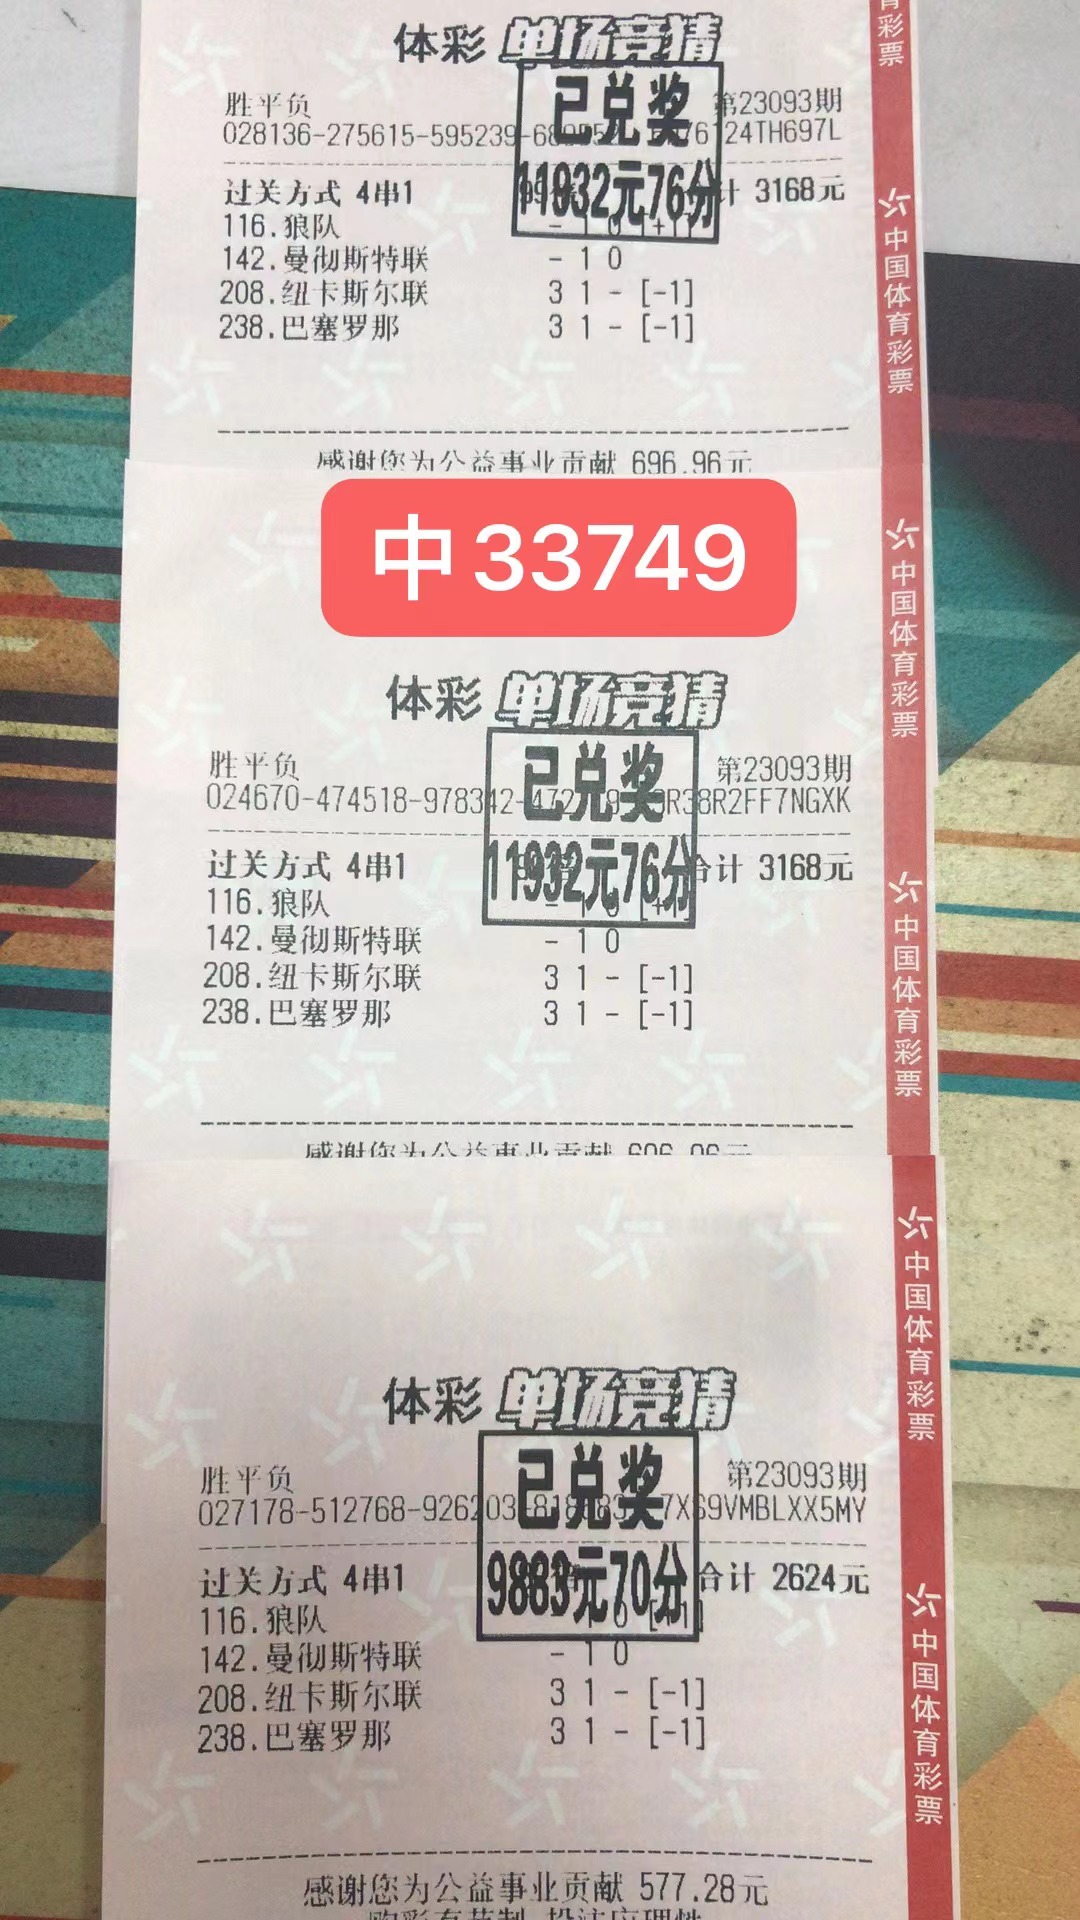  9月17日胜平负三票共收33749元-北单实体店